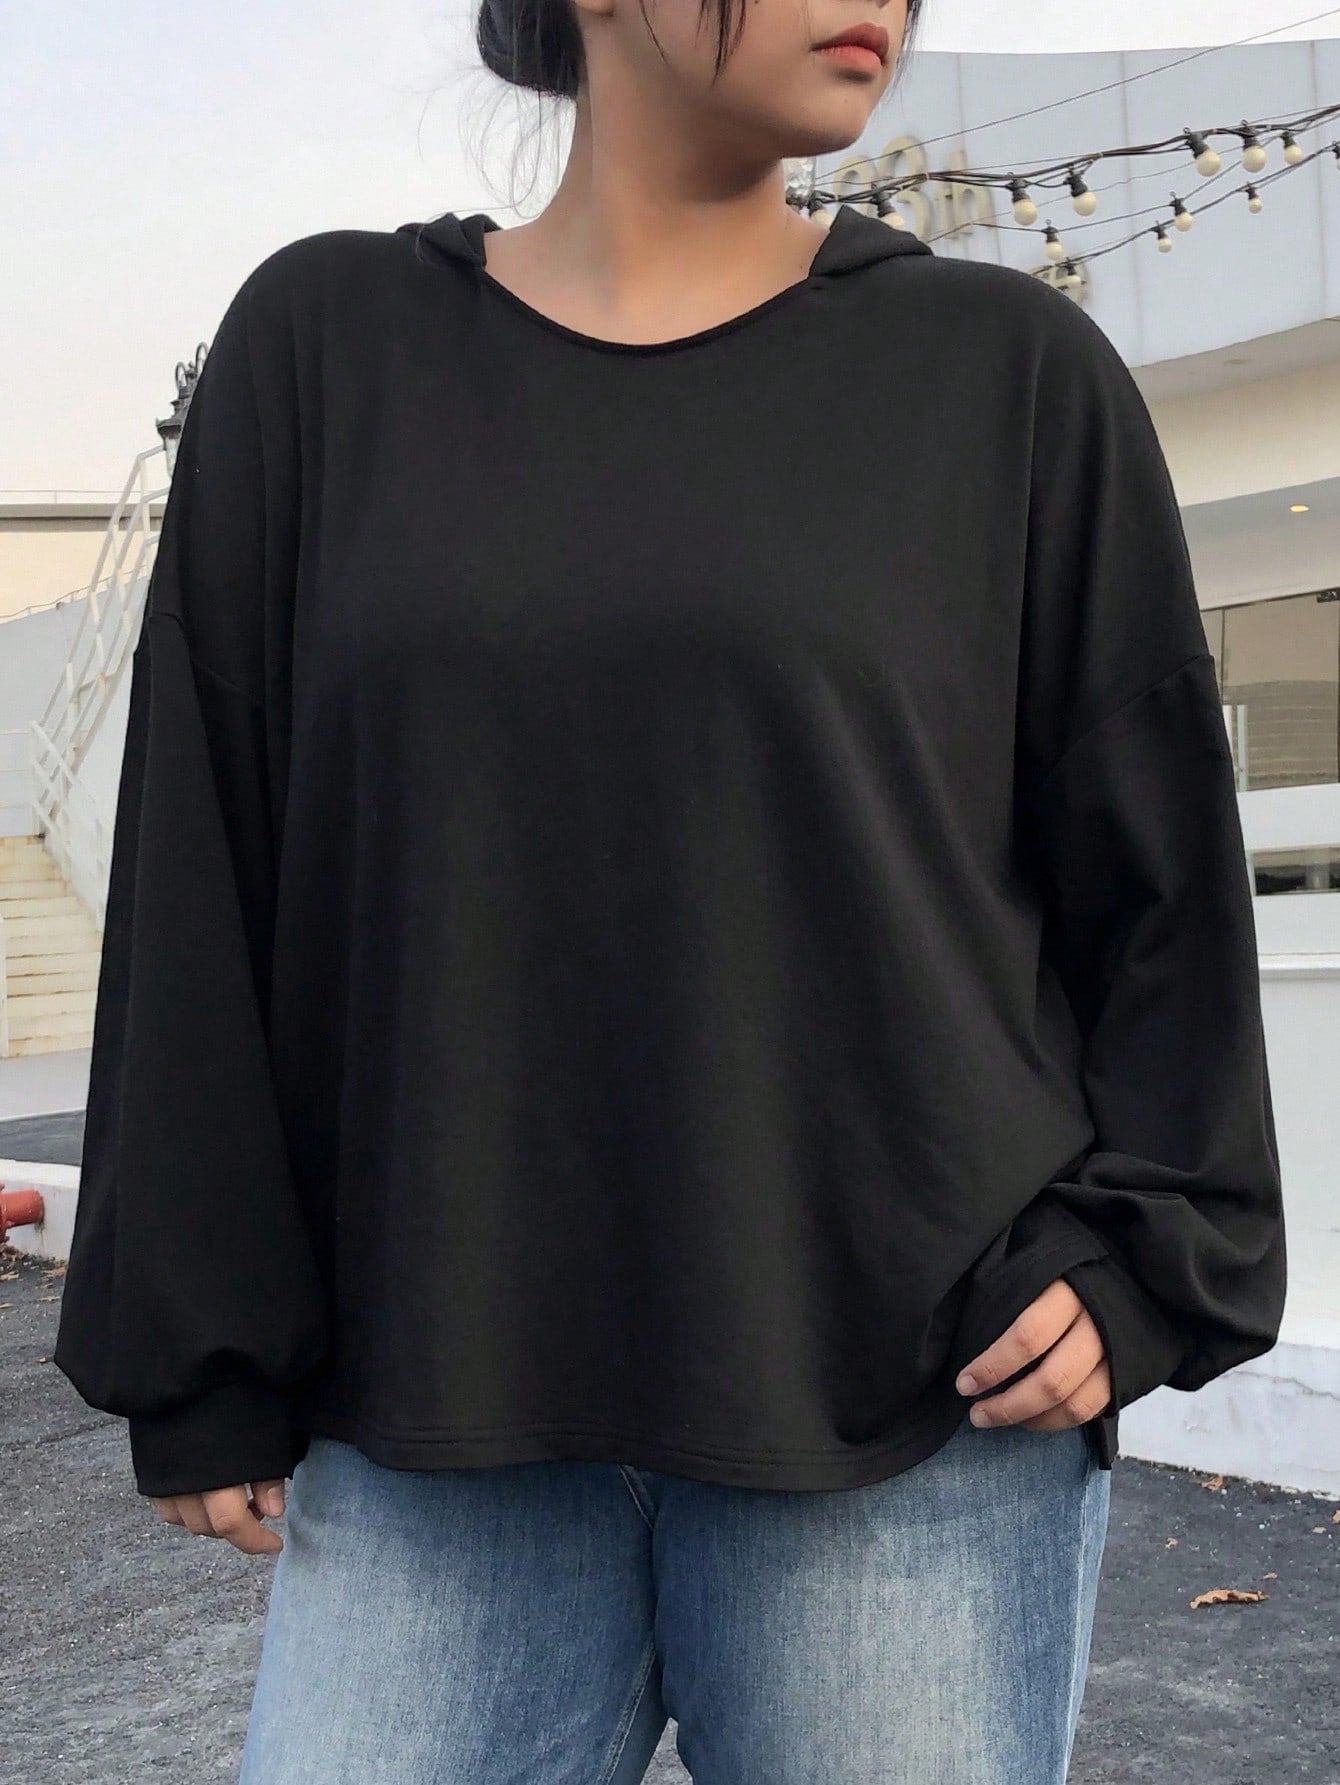 Women's Hooded Sweatshirt With Drop Shoulder Design